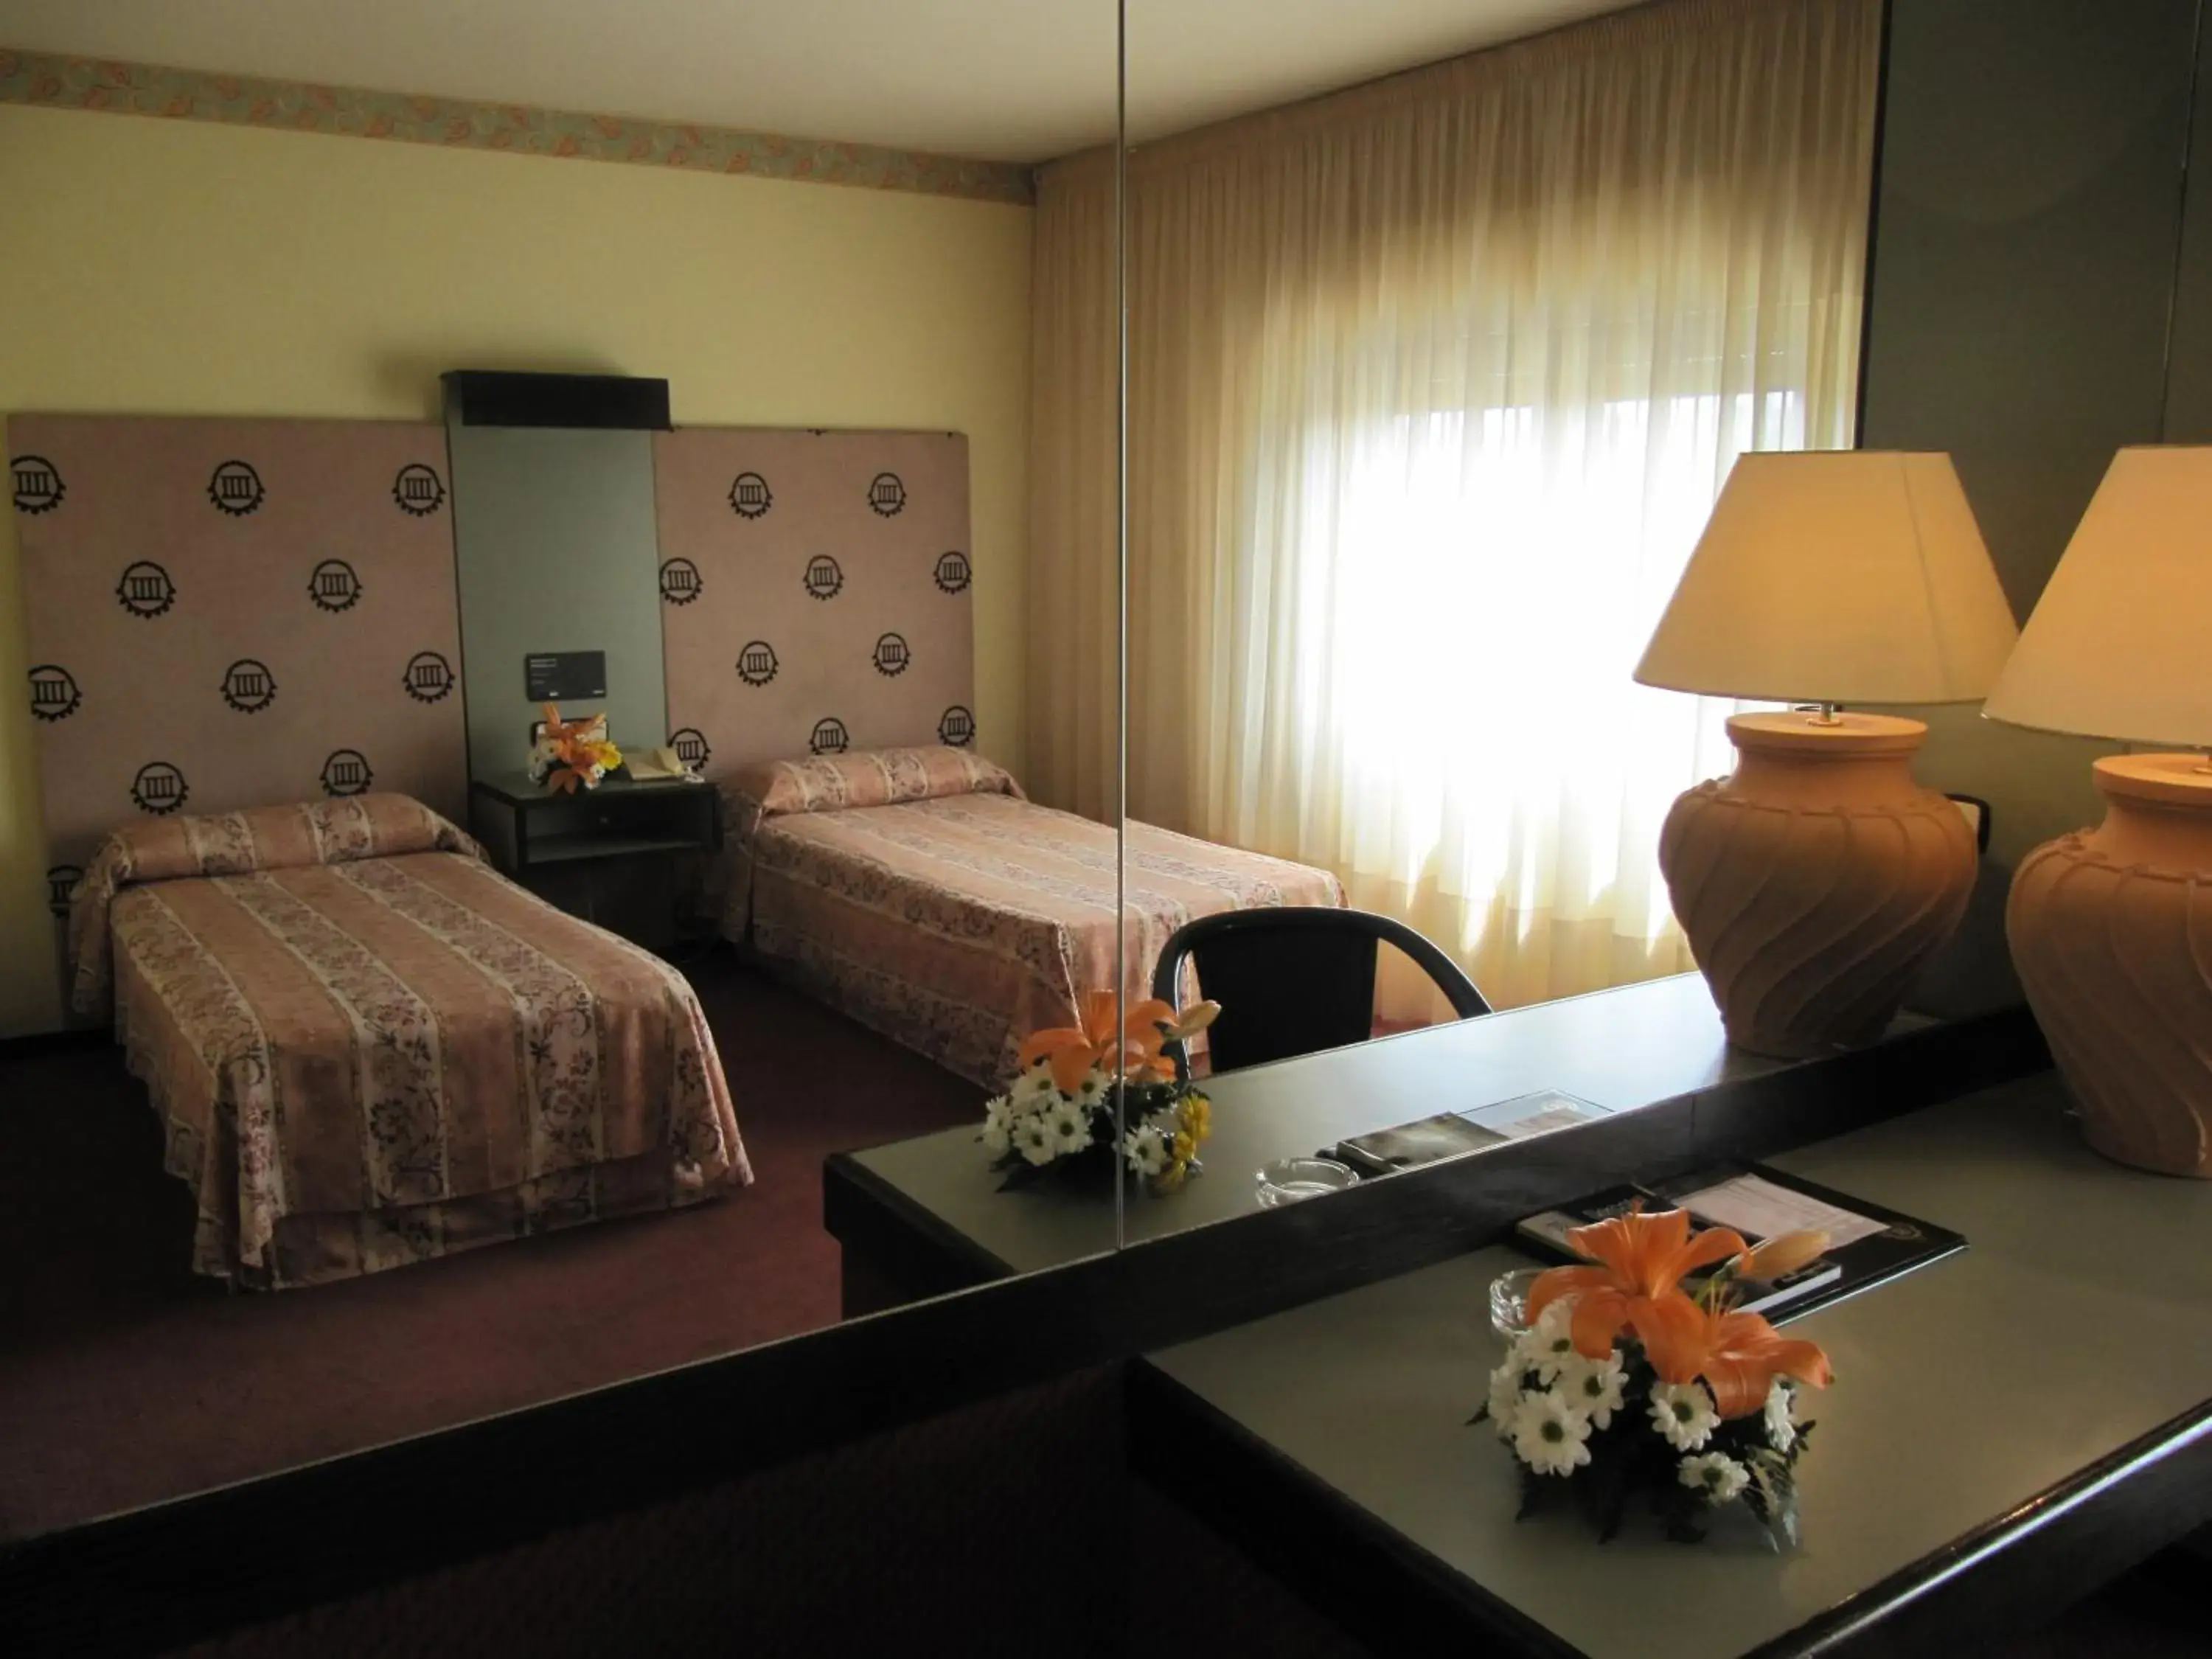 Bedroom, Room Photo in Hotel Sercotel Cuatro Postes